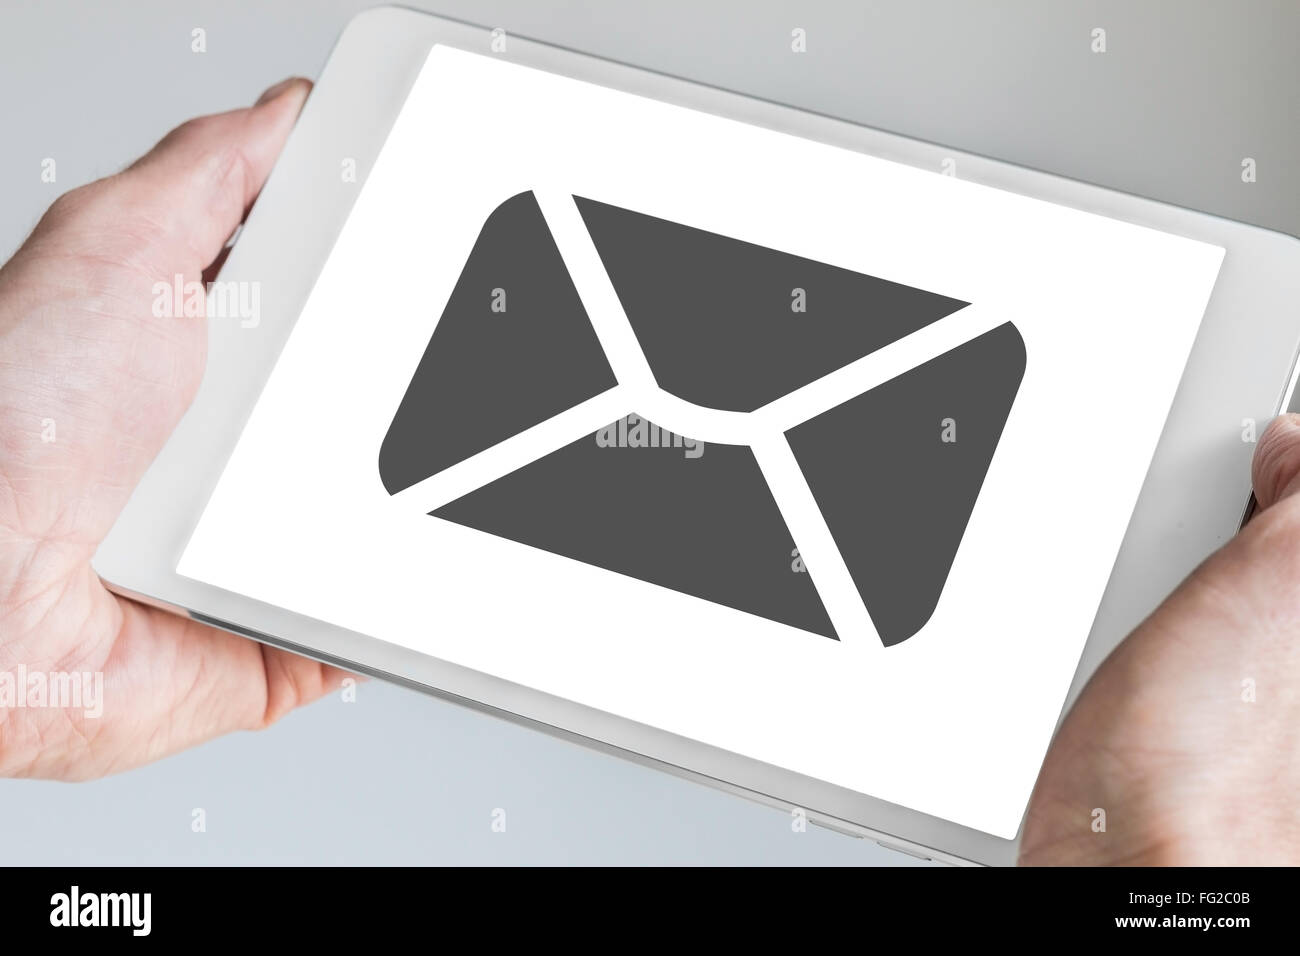 Correo electrónico móvil y mensajería concepto aparece en la pantalla táctil de Tablet moderna celebrada en dos manos Foto de stock